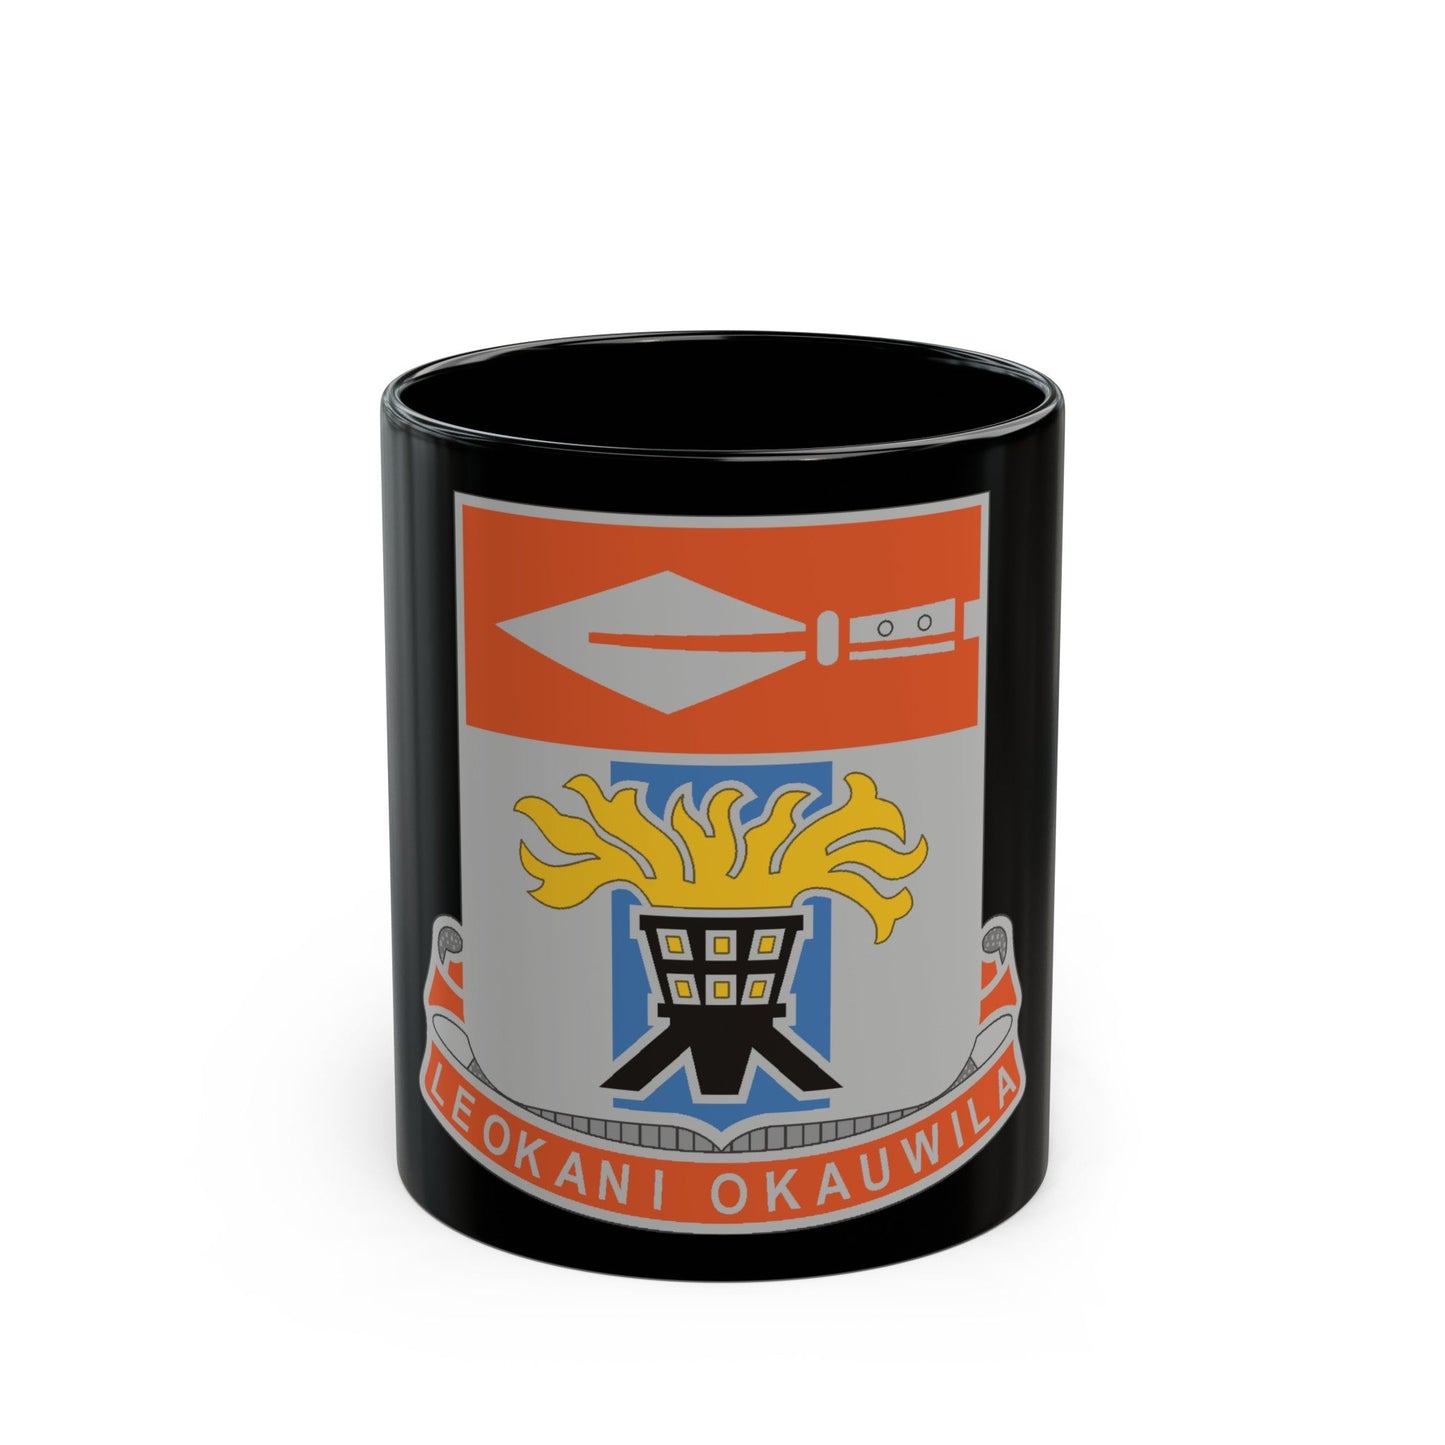 125 Signal Battalion (U.S. Army) Black Coffee Mug